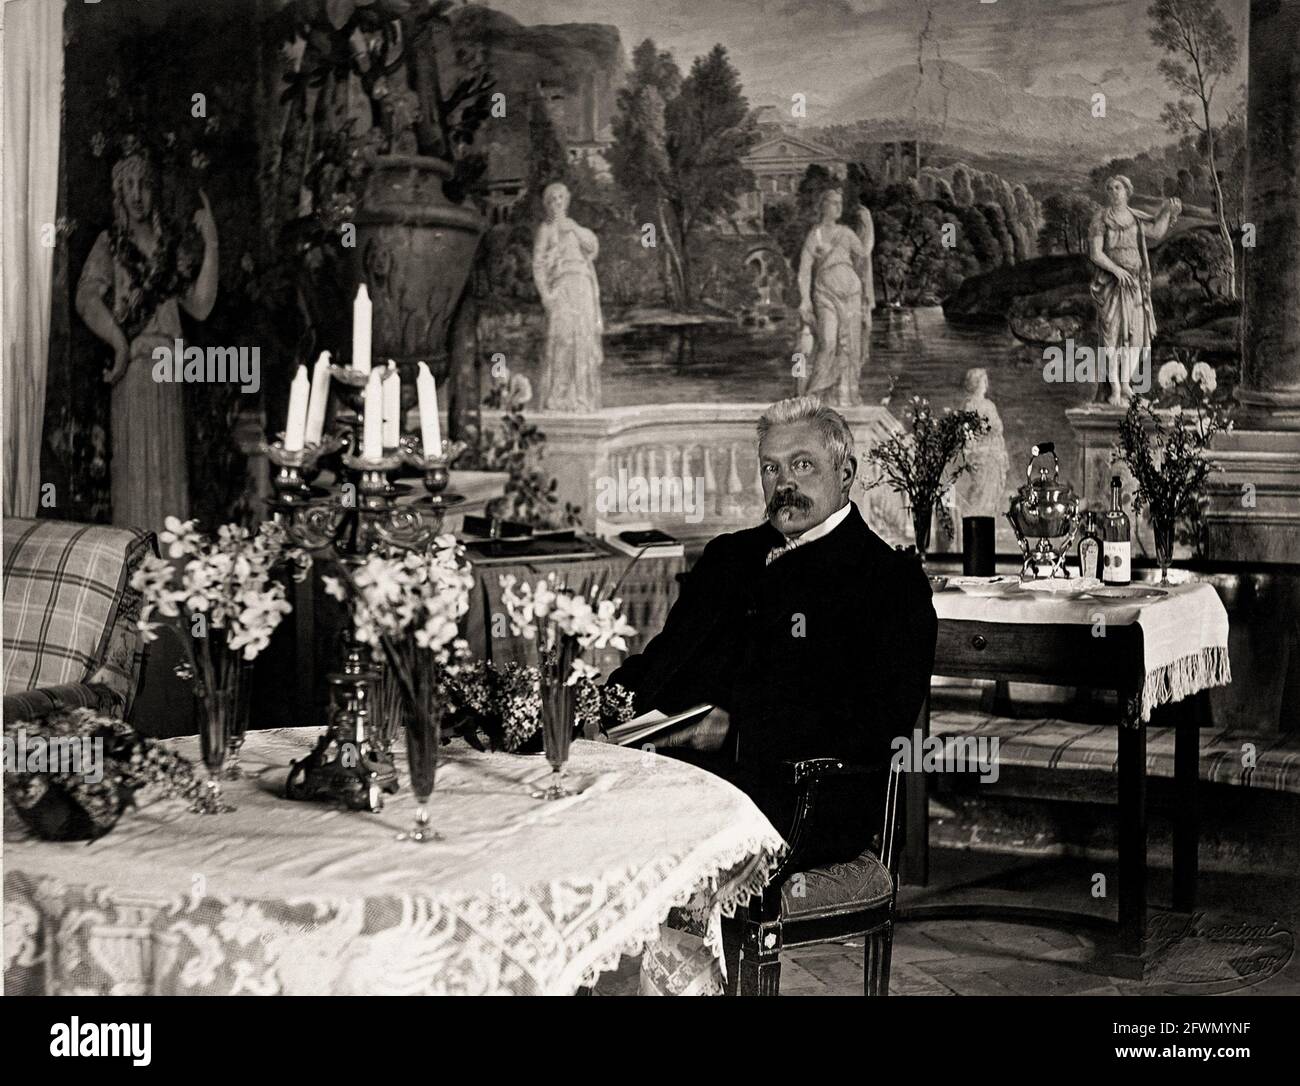 1900 ca , Frascati , ITALIA : LO scrittore e drammaturgo tedesco RICHARD VOSS ( 1851 - 1918 ) nella sua magnifica Villa Falconieri , Frascati . Foto di Romualdo Moscioni ( nato nel 1849 - 1925 ), Roma . - LETTERATURA - LETTERATURA - sceneggiatura - TEATRO - TEATRO - drammaturgo - ritratto - ritratto - fiori - fiori - sala da pranzo - baffi - baffi - STORIA - FOTO STORICHE --- Archivio GBB Foto Stock